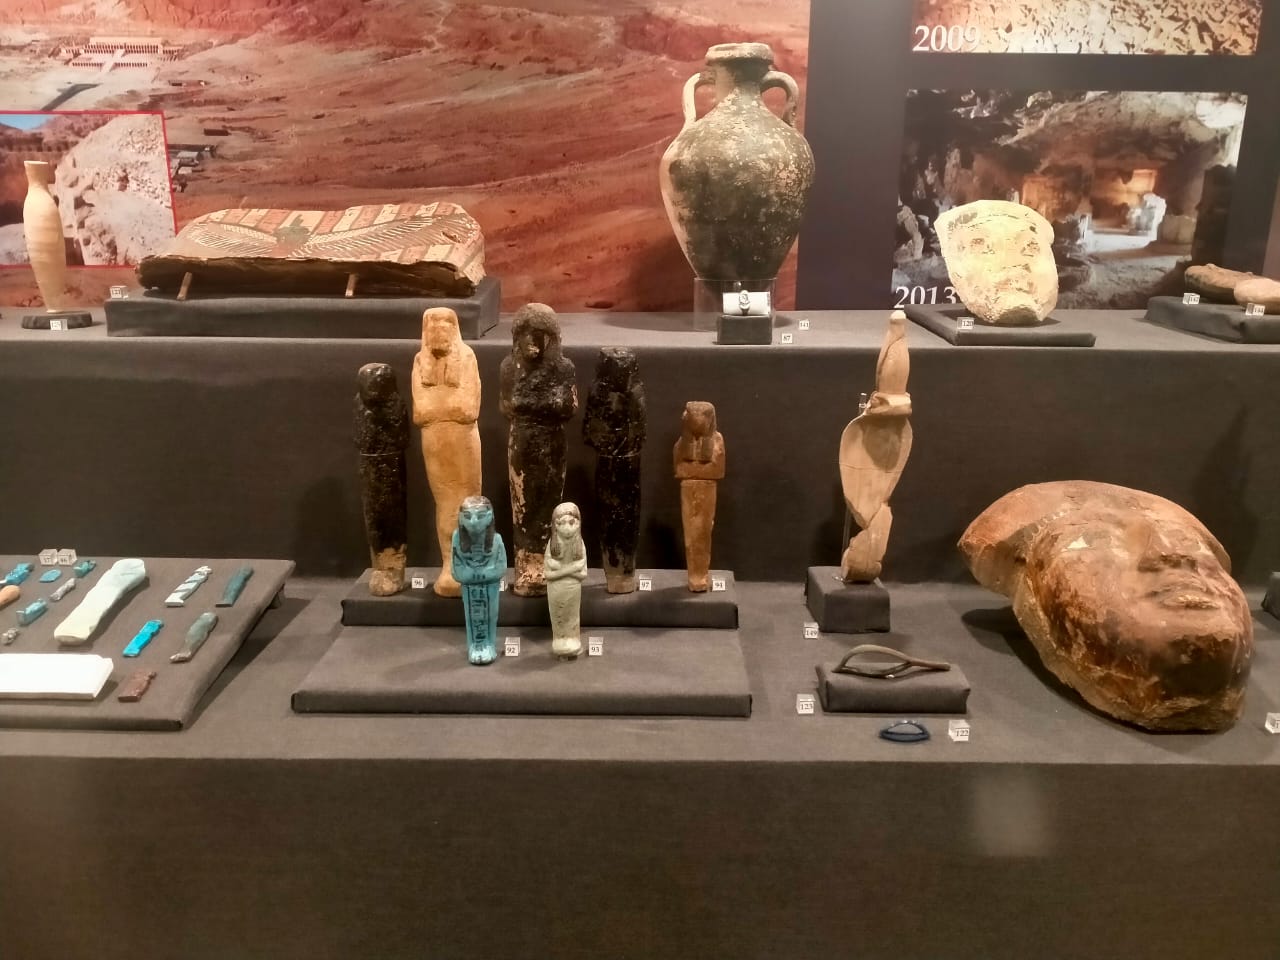 أنشئ المتحف خصيصًا لإعادة إحياء الفن بمدينة طيبة القديمة